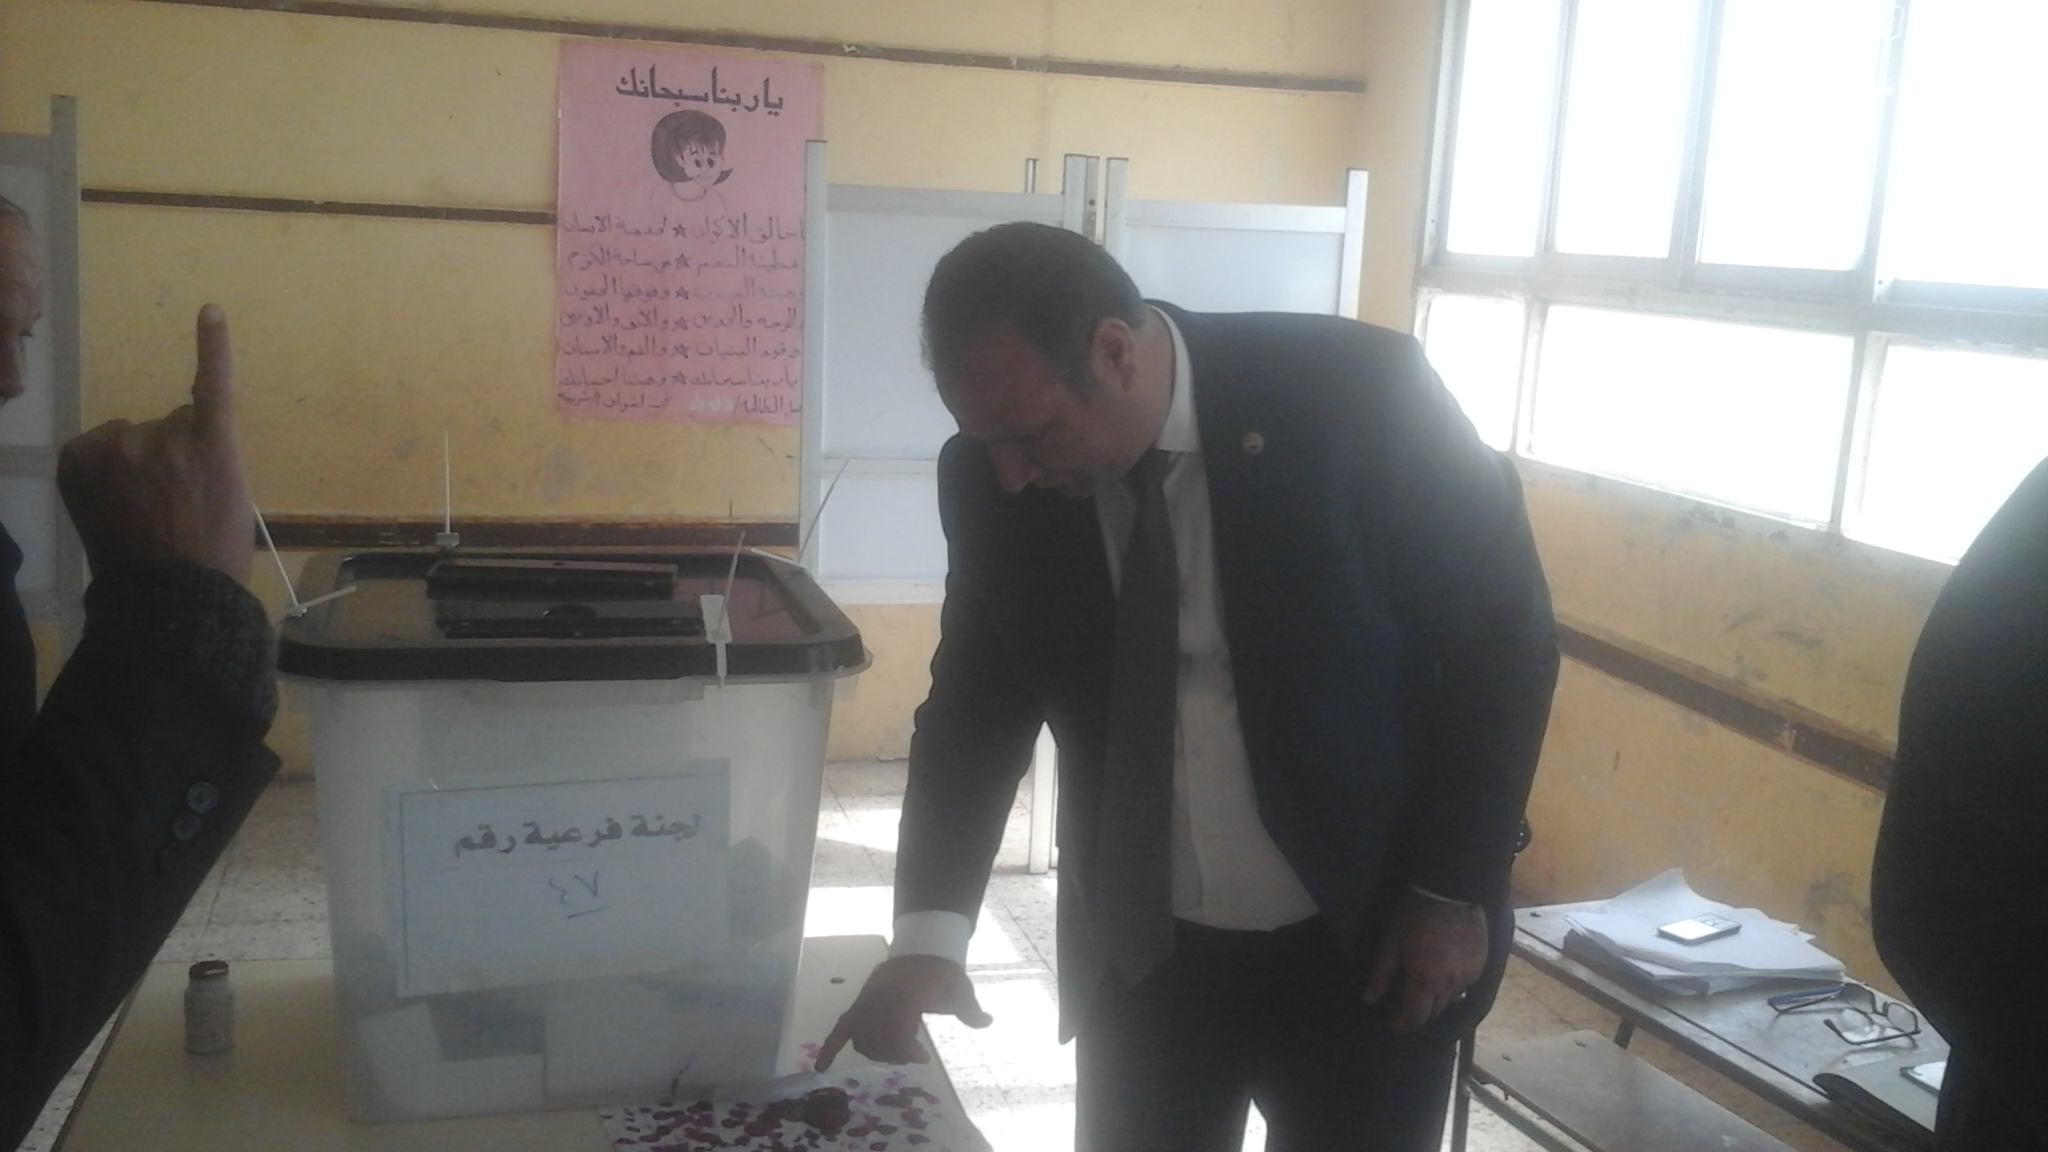  النائب علاء ناجى يدلى بصوته فى الاستفتاء (2)